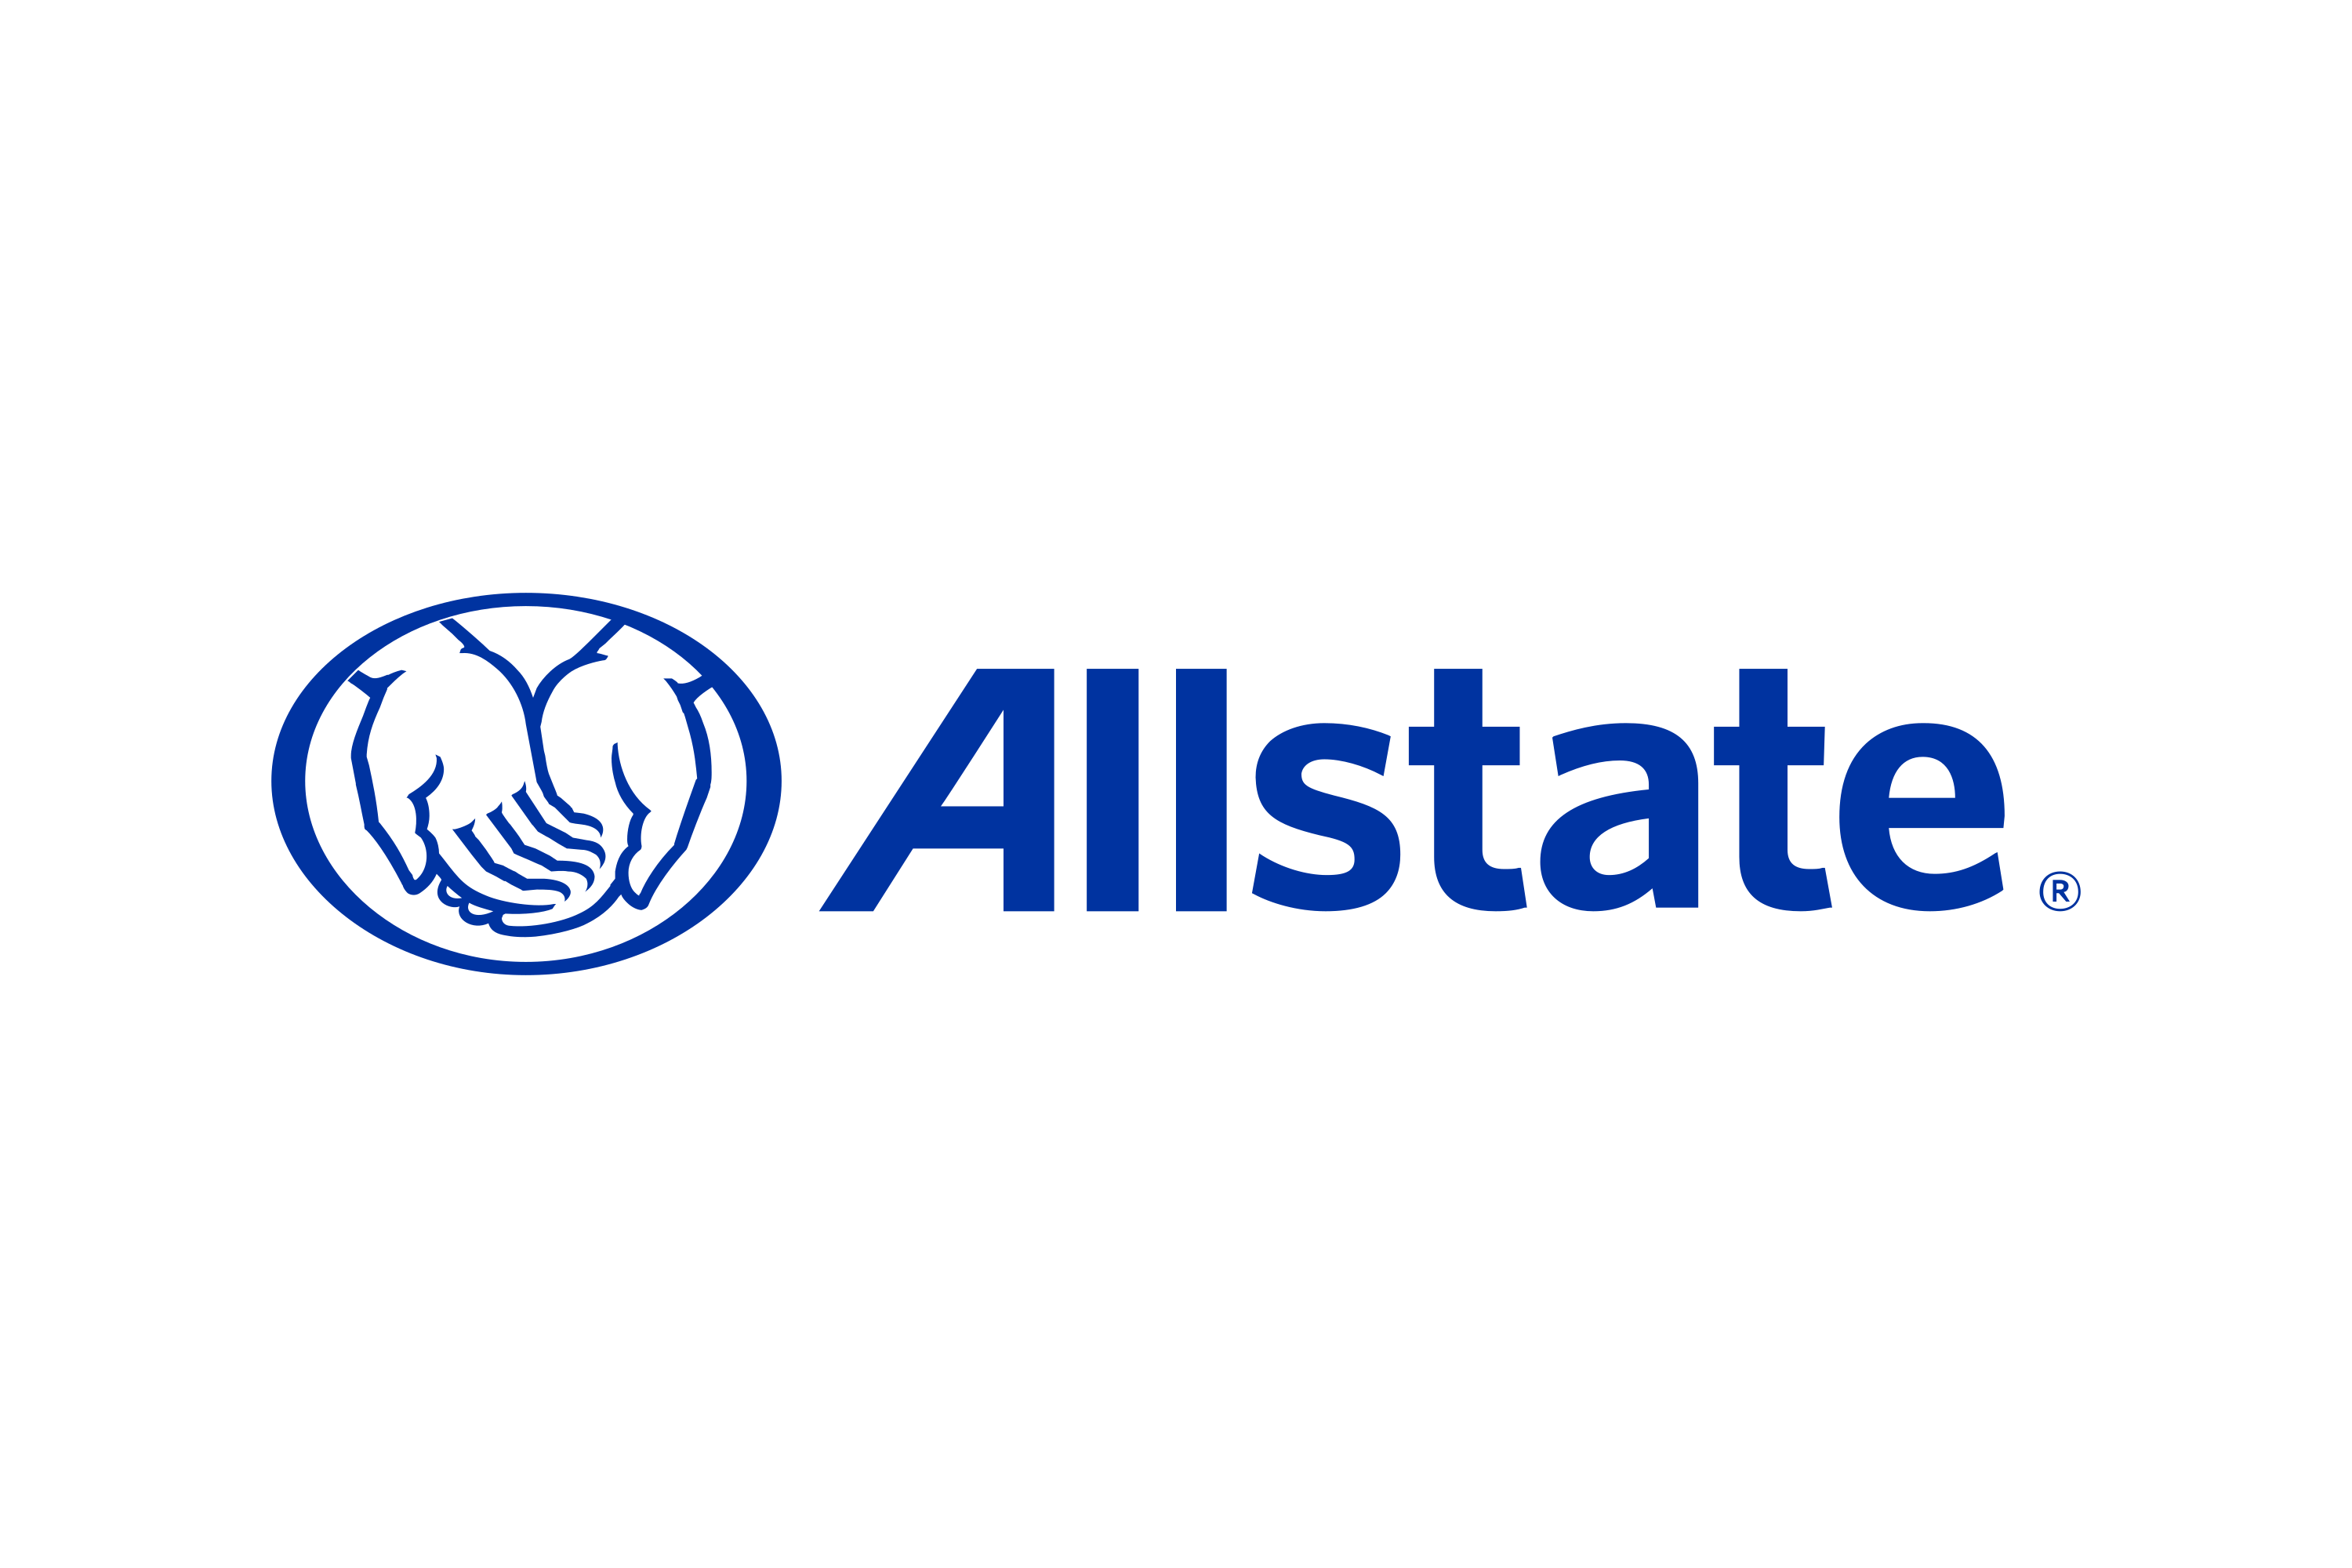 allstate logo